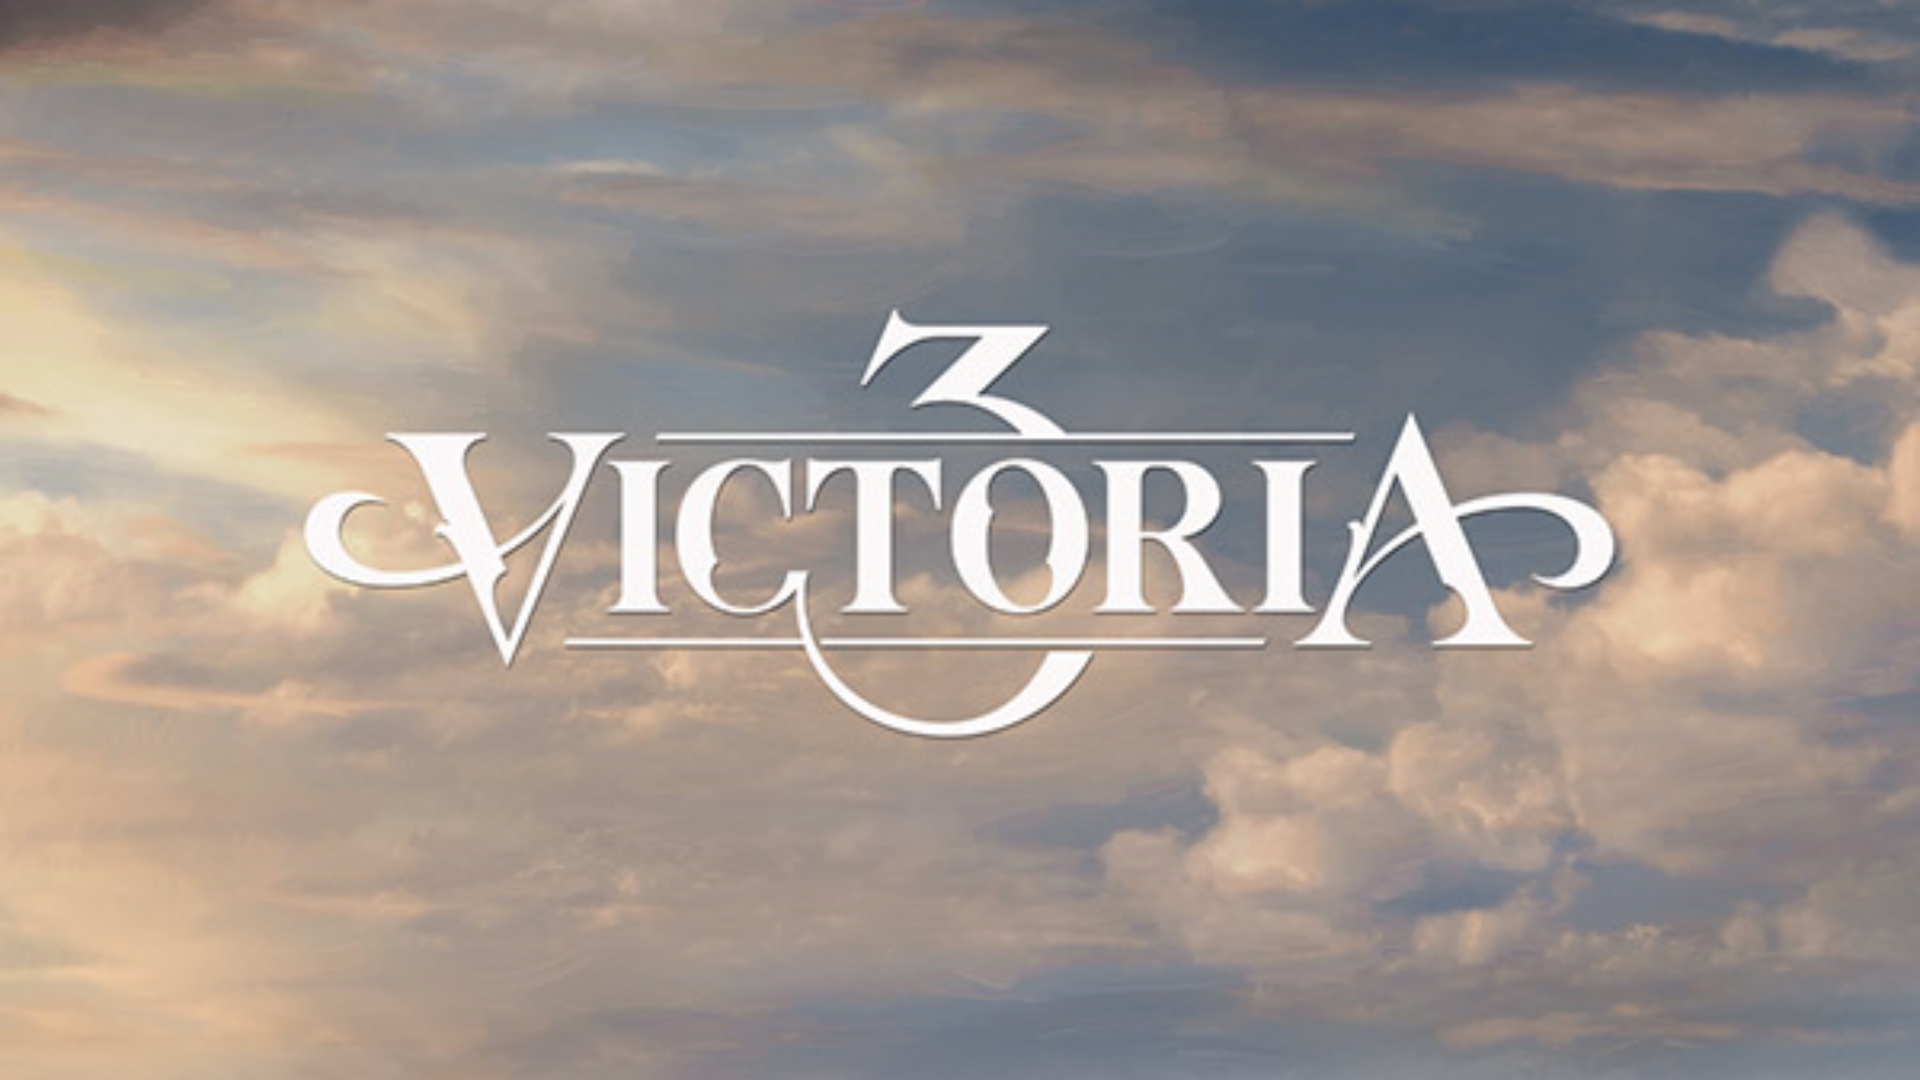 victoria 3 release date leak